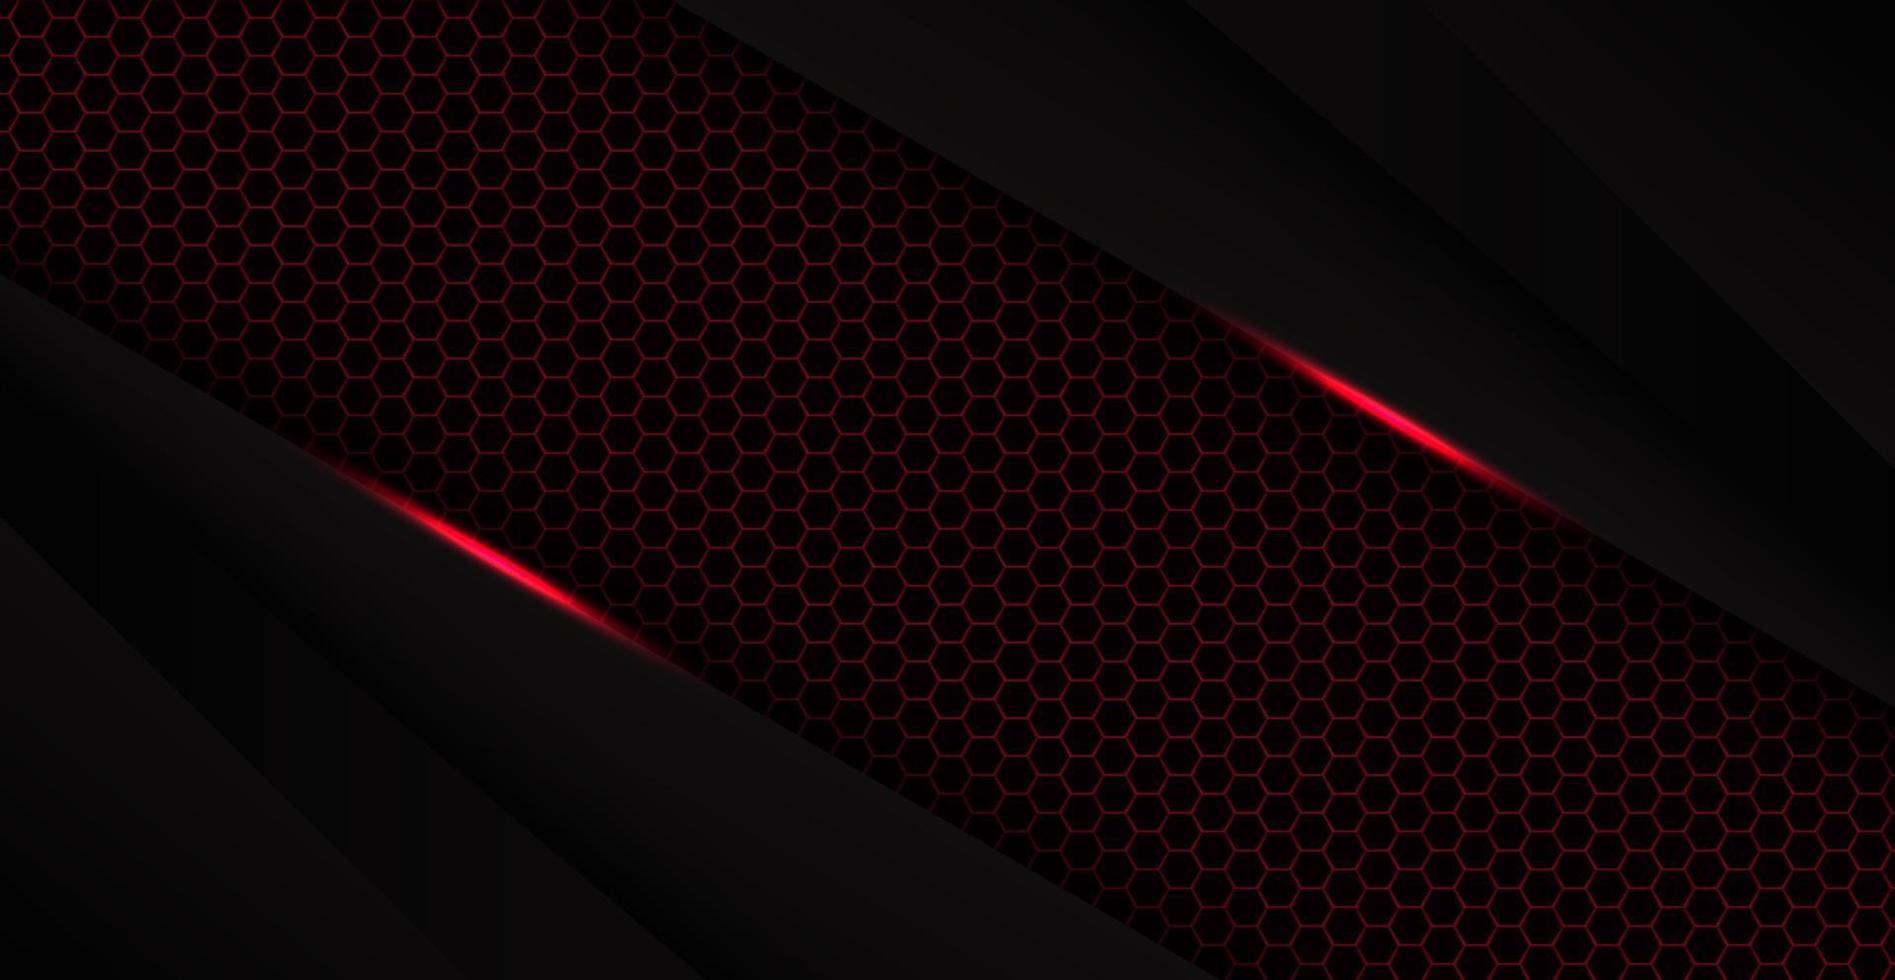 abstraktes rotes schwarzes Raumrahmen-Layout-Design Tech-Dreieck-Konzept mit Hexagon-Textur-Hintergrund. eps10-Vektor vektor